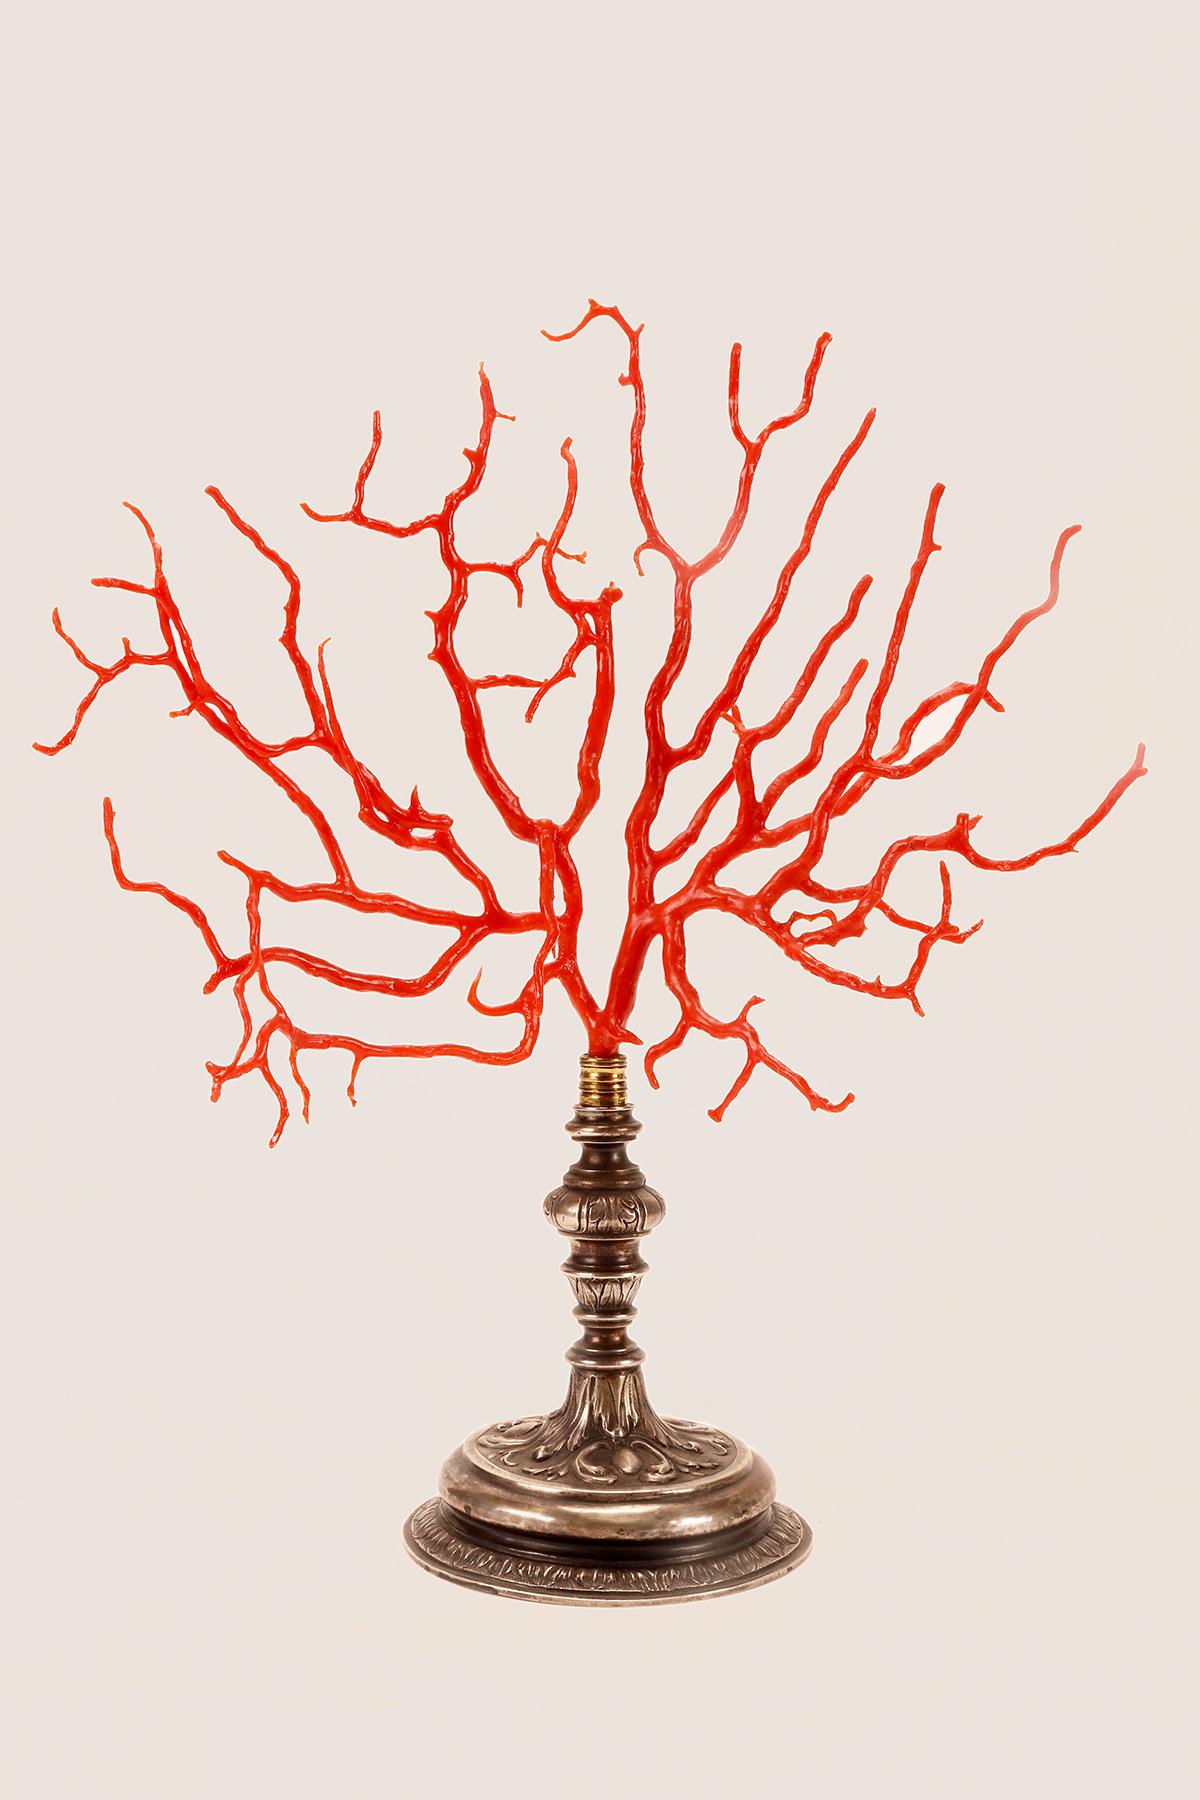 Une grosse branche de corail rouge de Méditerranée (Corallium Rubrum).
La base est en argent, travail en relief, Italie, début du 19e siècle.